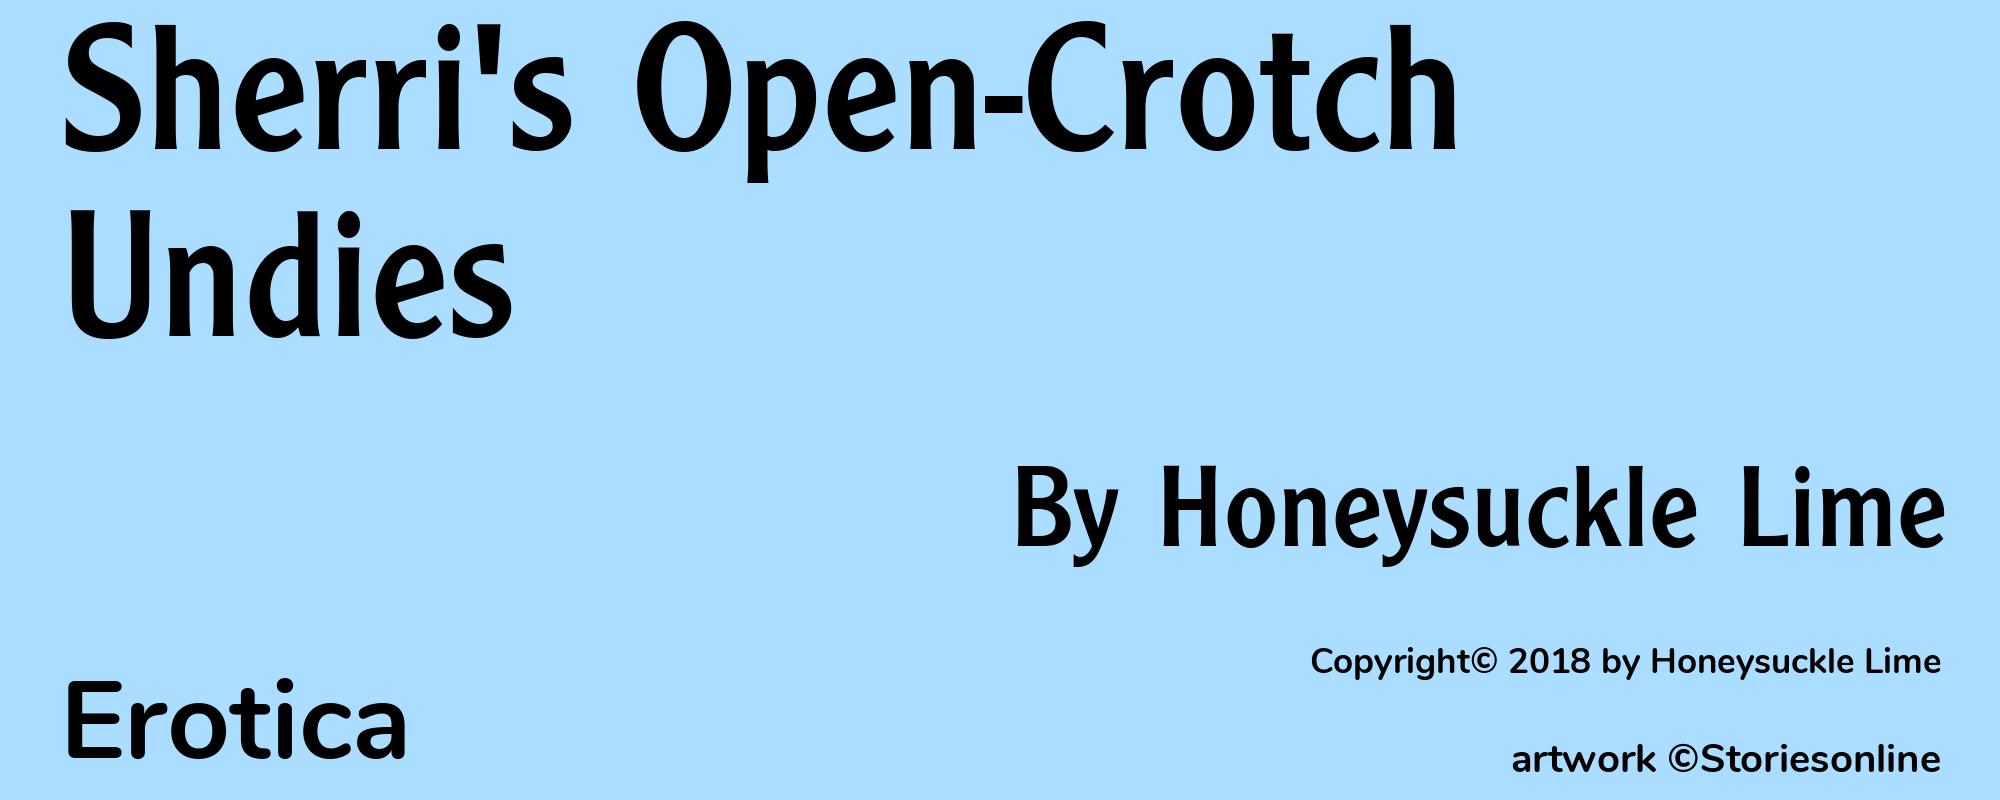 Sherri's Open-Crotch Undies - Cover